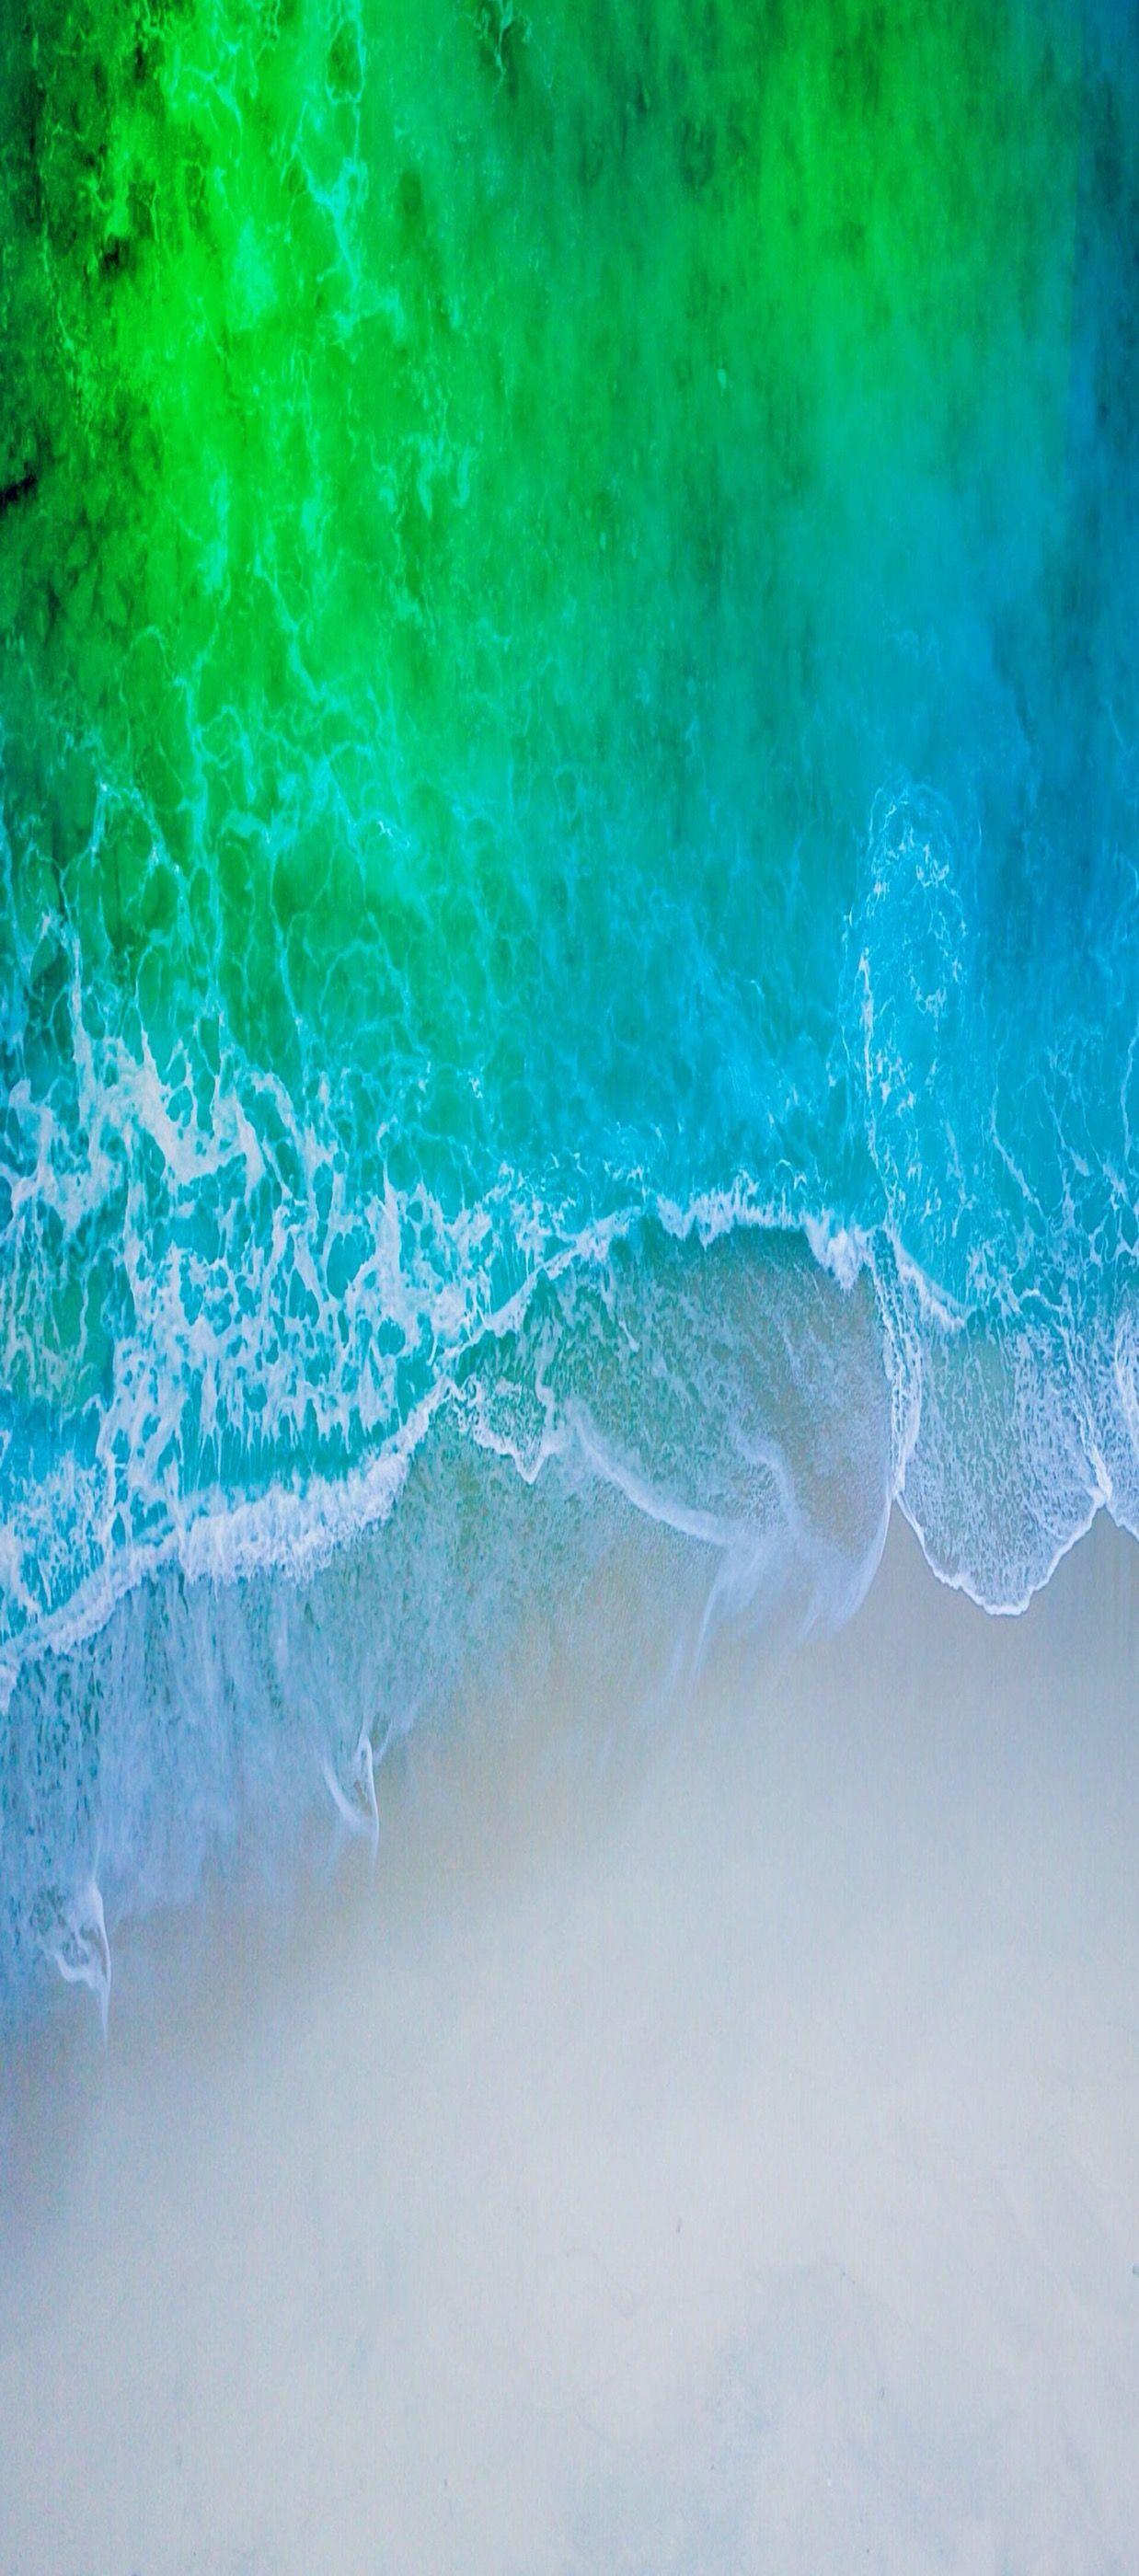 iOS iPhone X, Aqua, blue, Water, beach, wave, ocean, apple